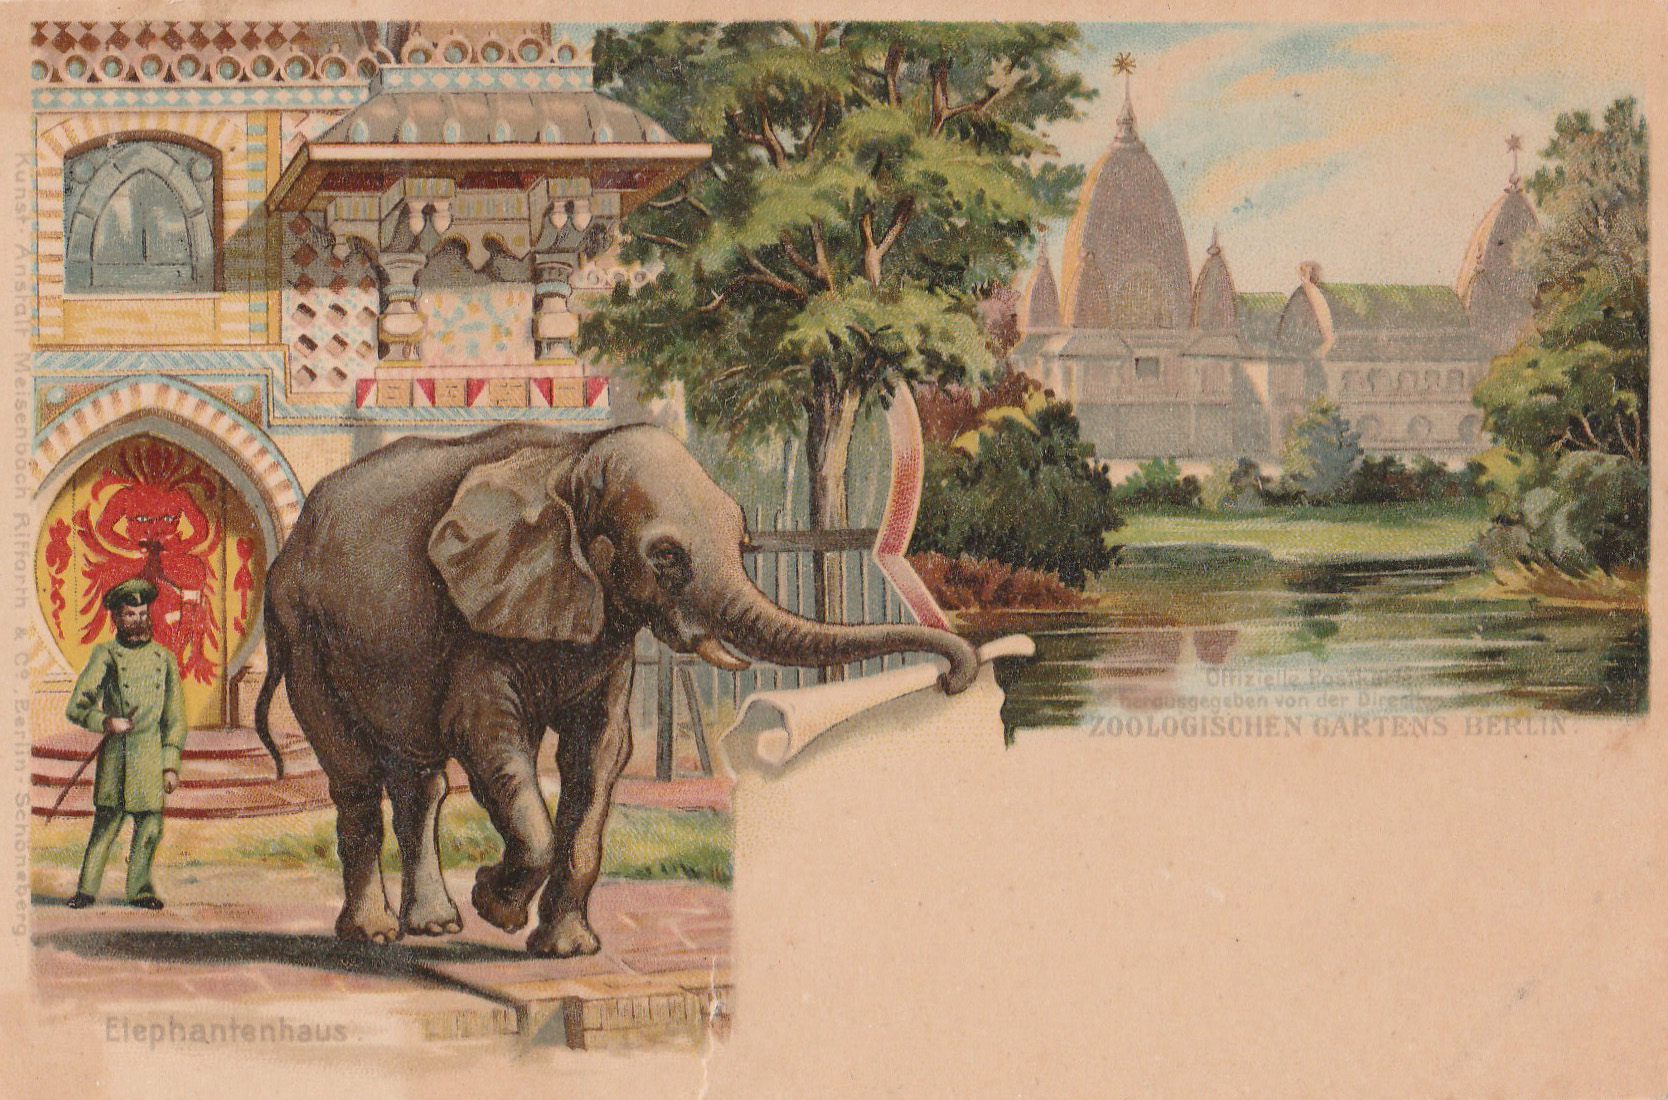 Bunte Zeichnung: Elefant scheint mit seinem Rüssel die Zeichnung auf der Postkarte abzureißen und zusammenzurollen. Die untere rechte Ecke ist also leer. Hinter dem Elefanten steht links ein bunter, orientalistisch anmutender Bau, rechts hinter Wasser und Bäumen steht schloss-ähnliches Gebäude mit Türmen. Unten links steht ein bärtiger Zoowärter in grüner Uniform.